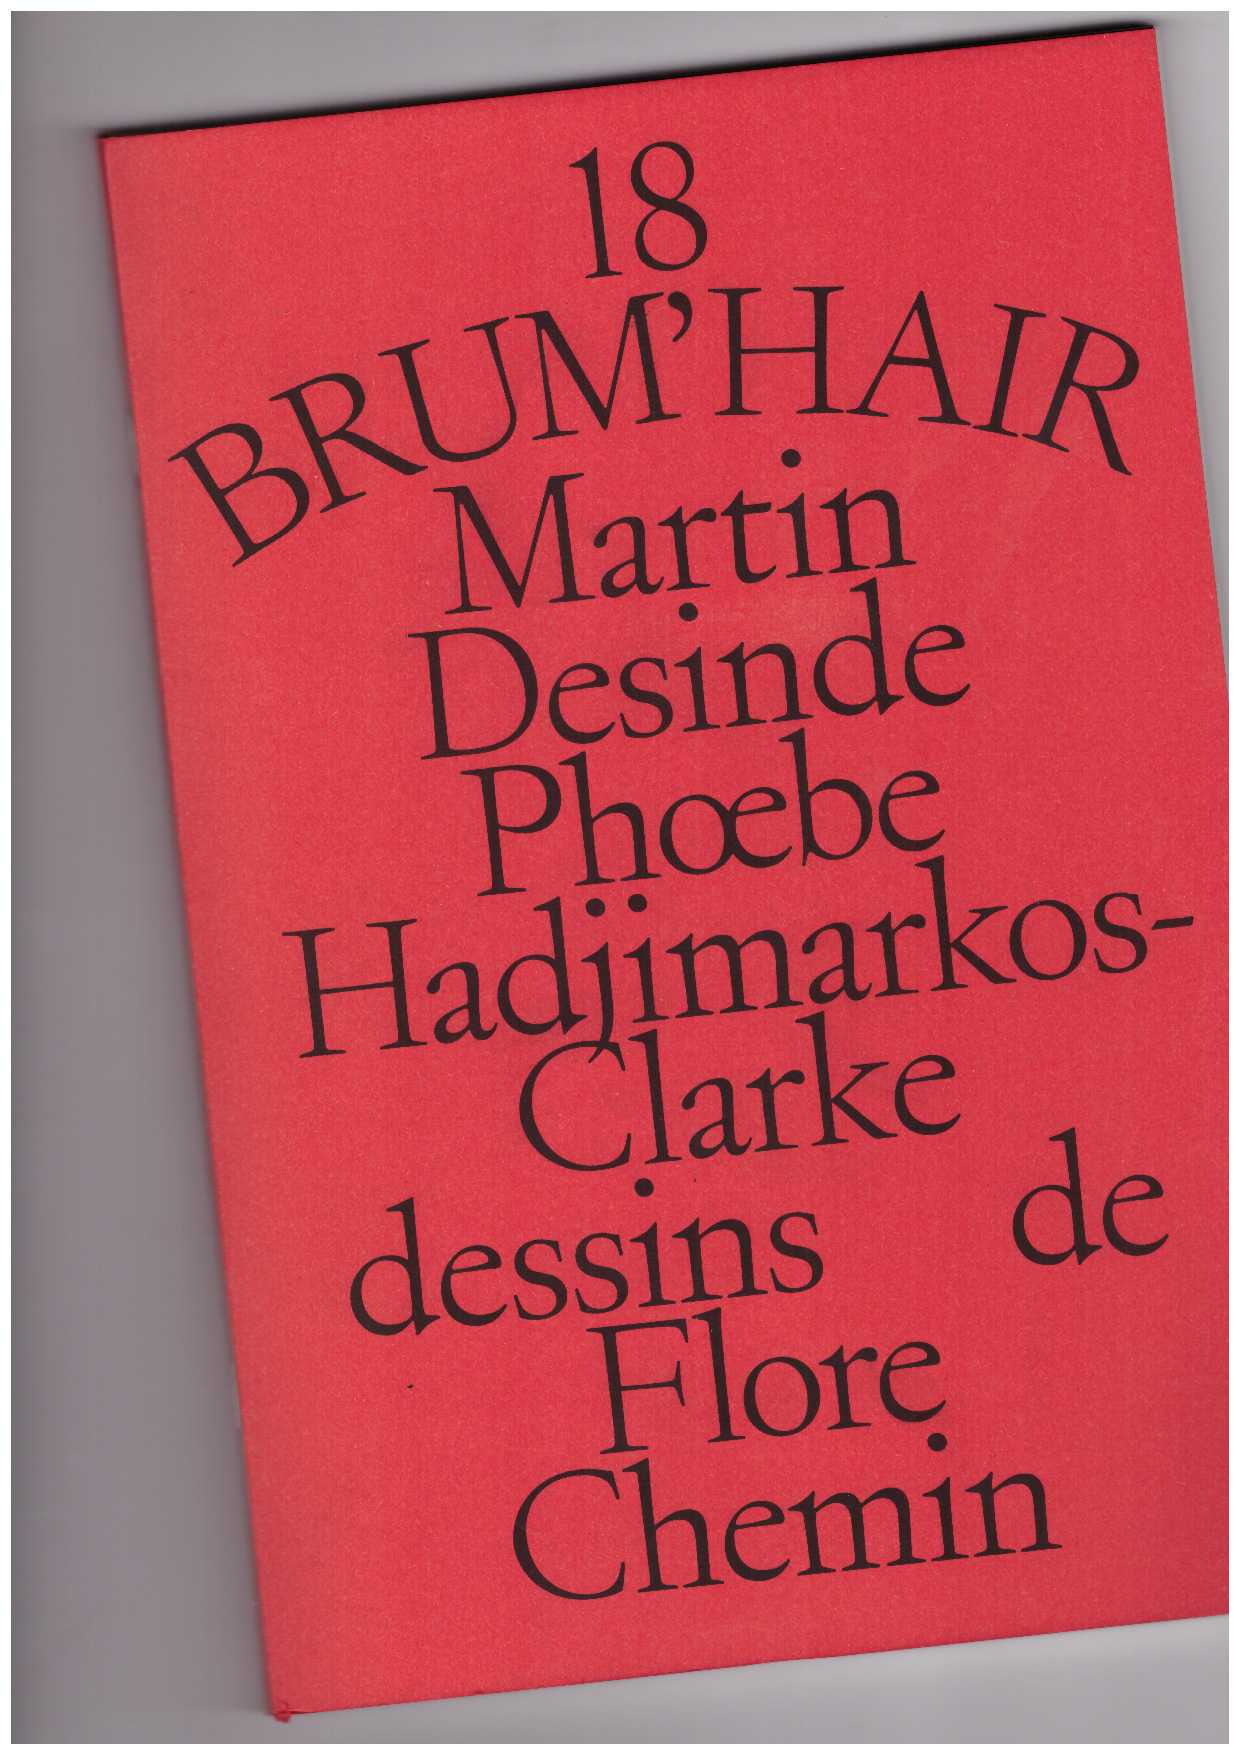 DESINDE, Martin; HADJIMARKOS-CLARKE, Phœbe; CHEMIN, Flore - 18 Brum’Hair